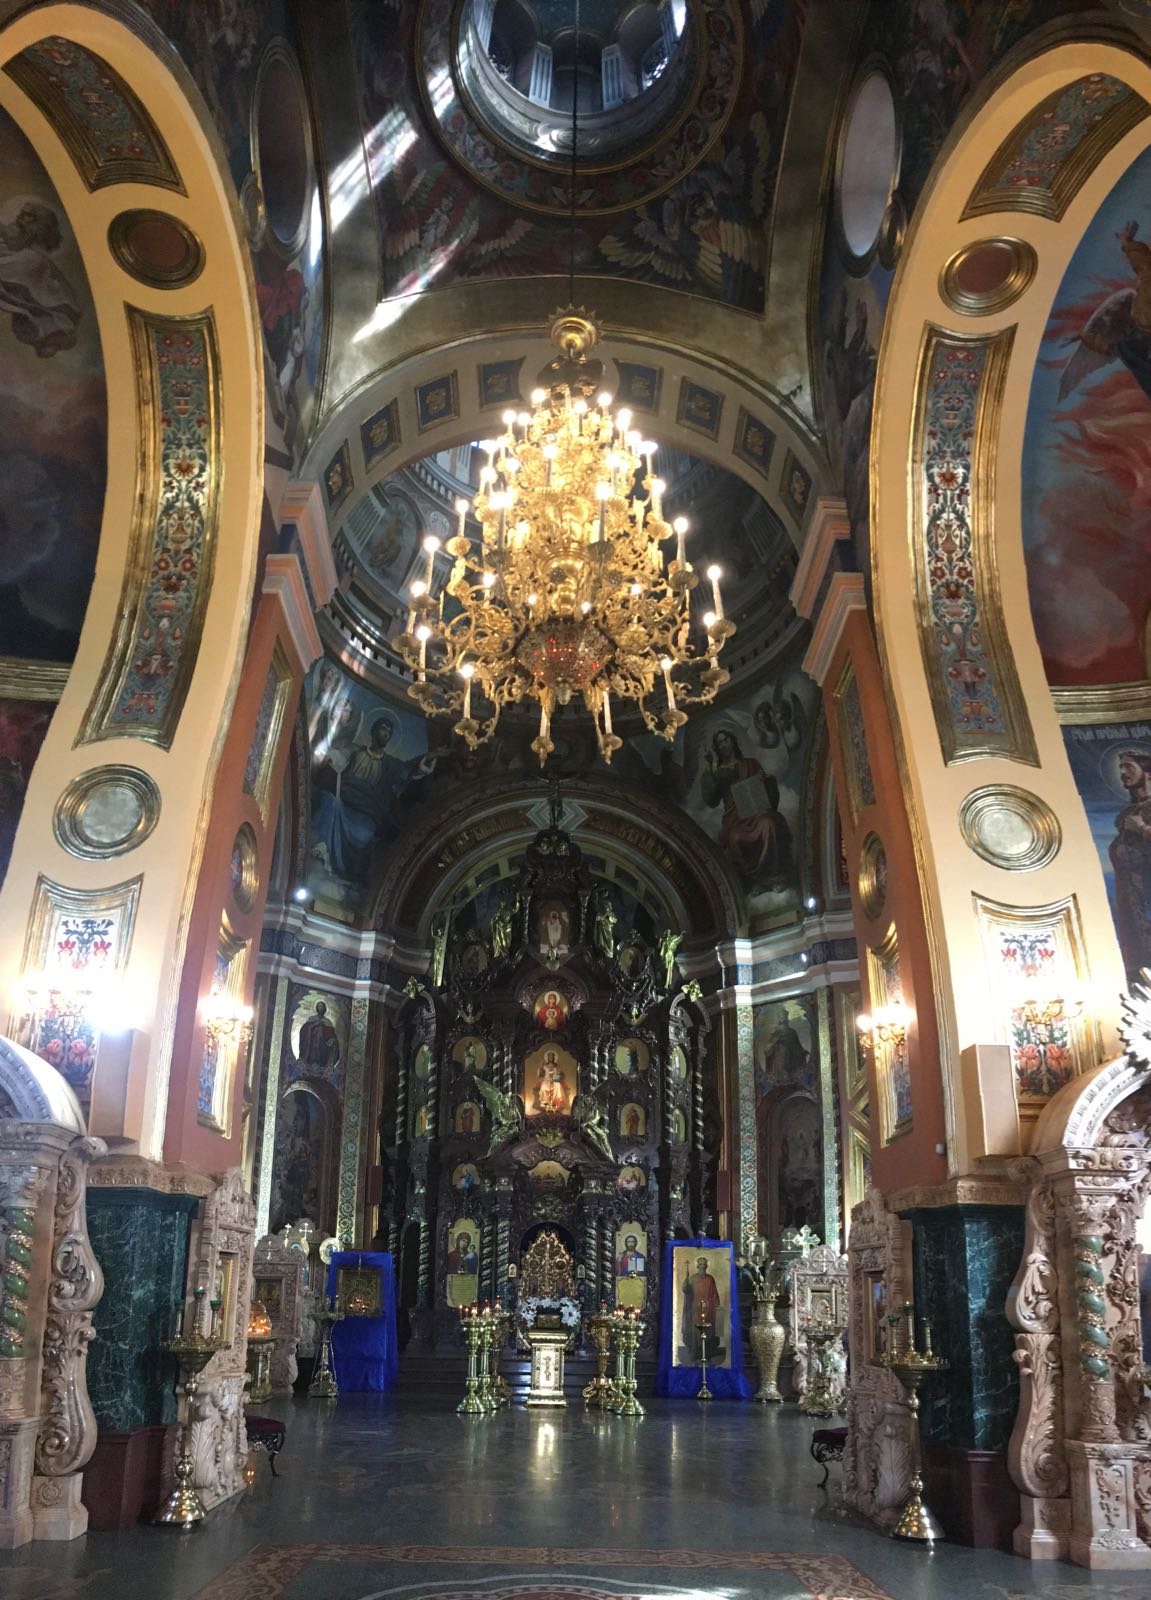 远远的就听见教堂的歌声 教堂色彩鲜艳 雕塑精致 装潢壮观 是西伯利亚最